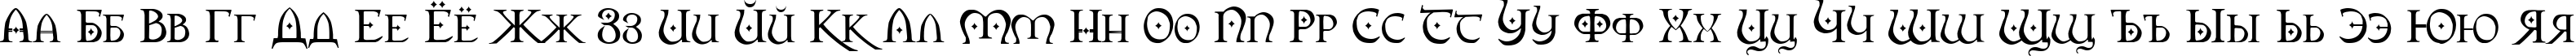 Пример написания русского алфавита шрифтом Orpheus